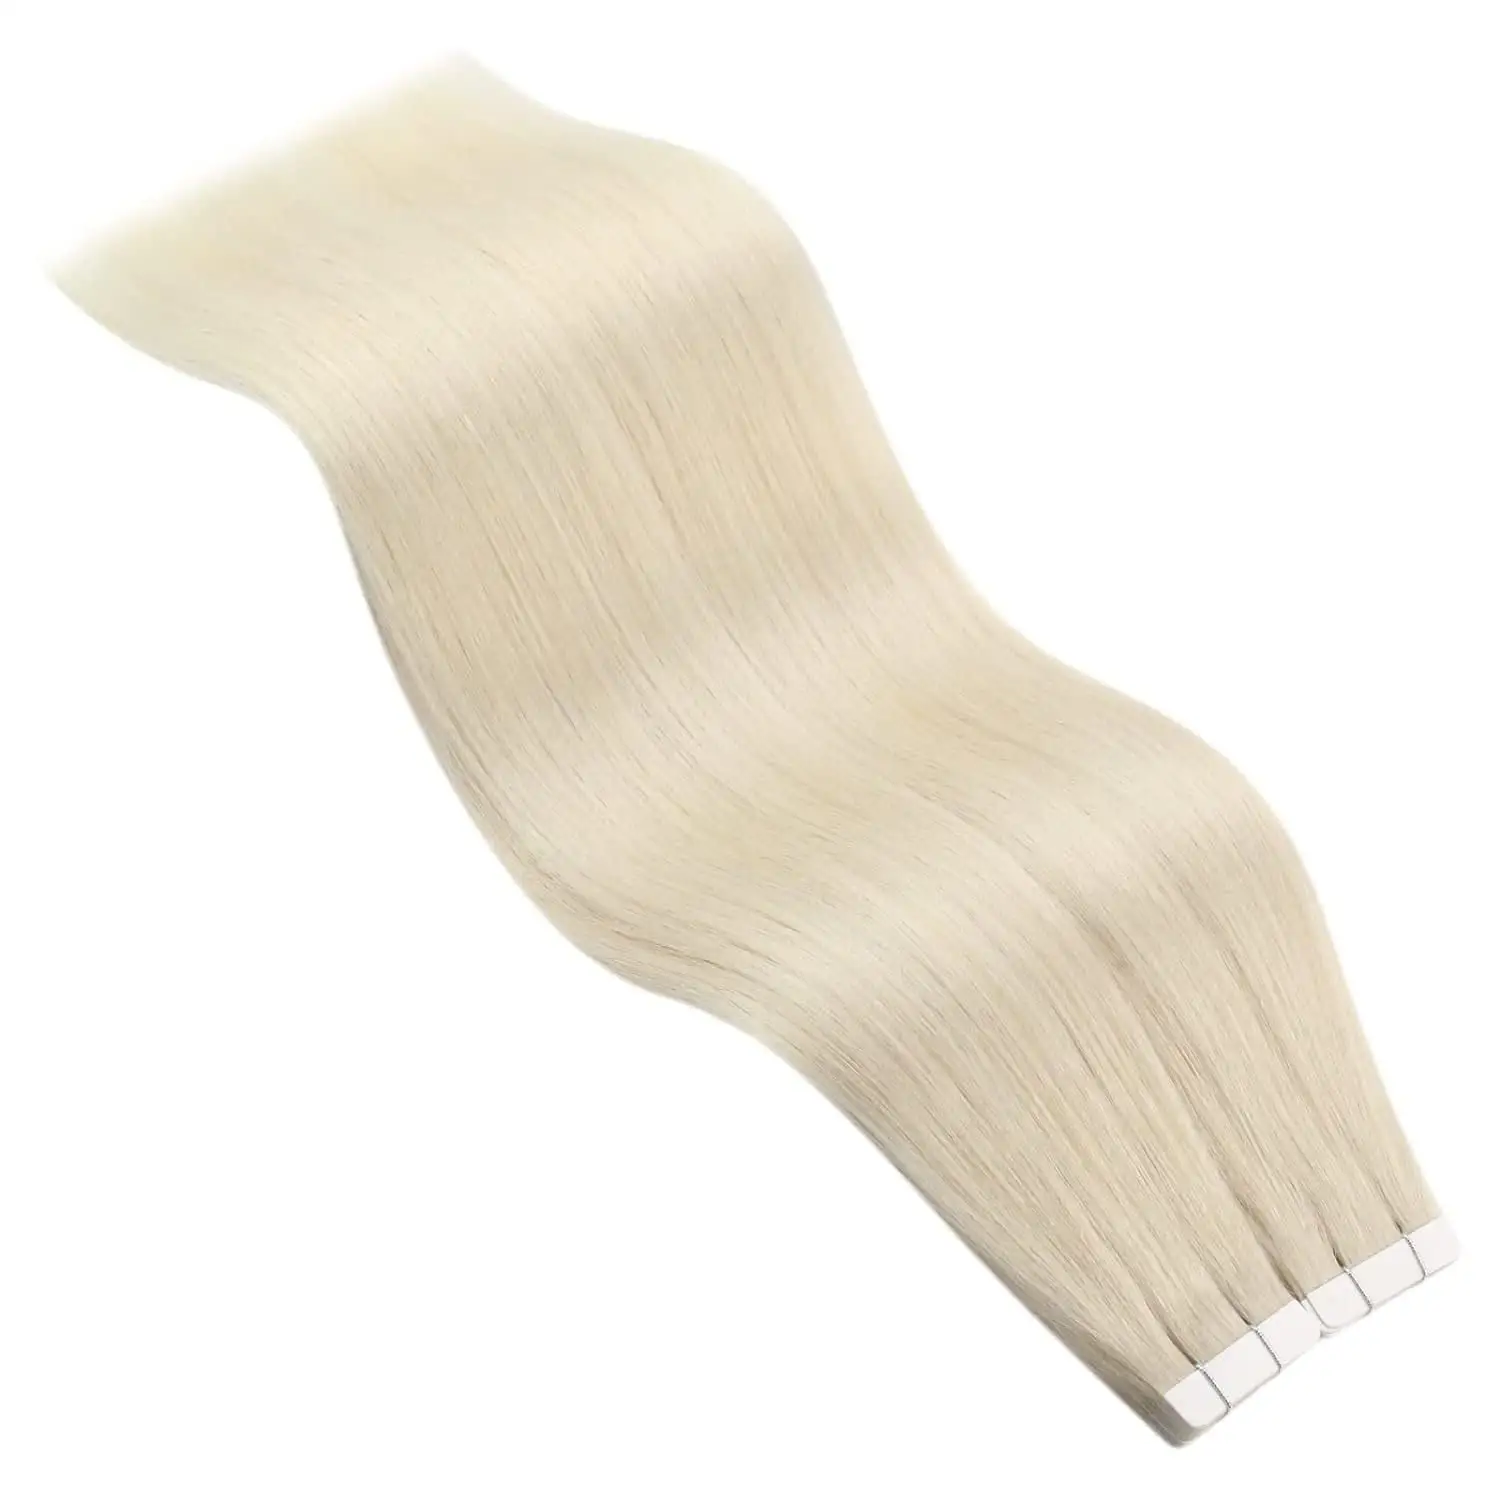 Offre Spéciale pas d'enchevêtrement et pas de perte de cuticule Remy russe intacte bande de cheveux humains dans l'offre d'extension de cheveux échantillon de cheveux populaires